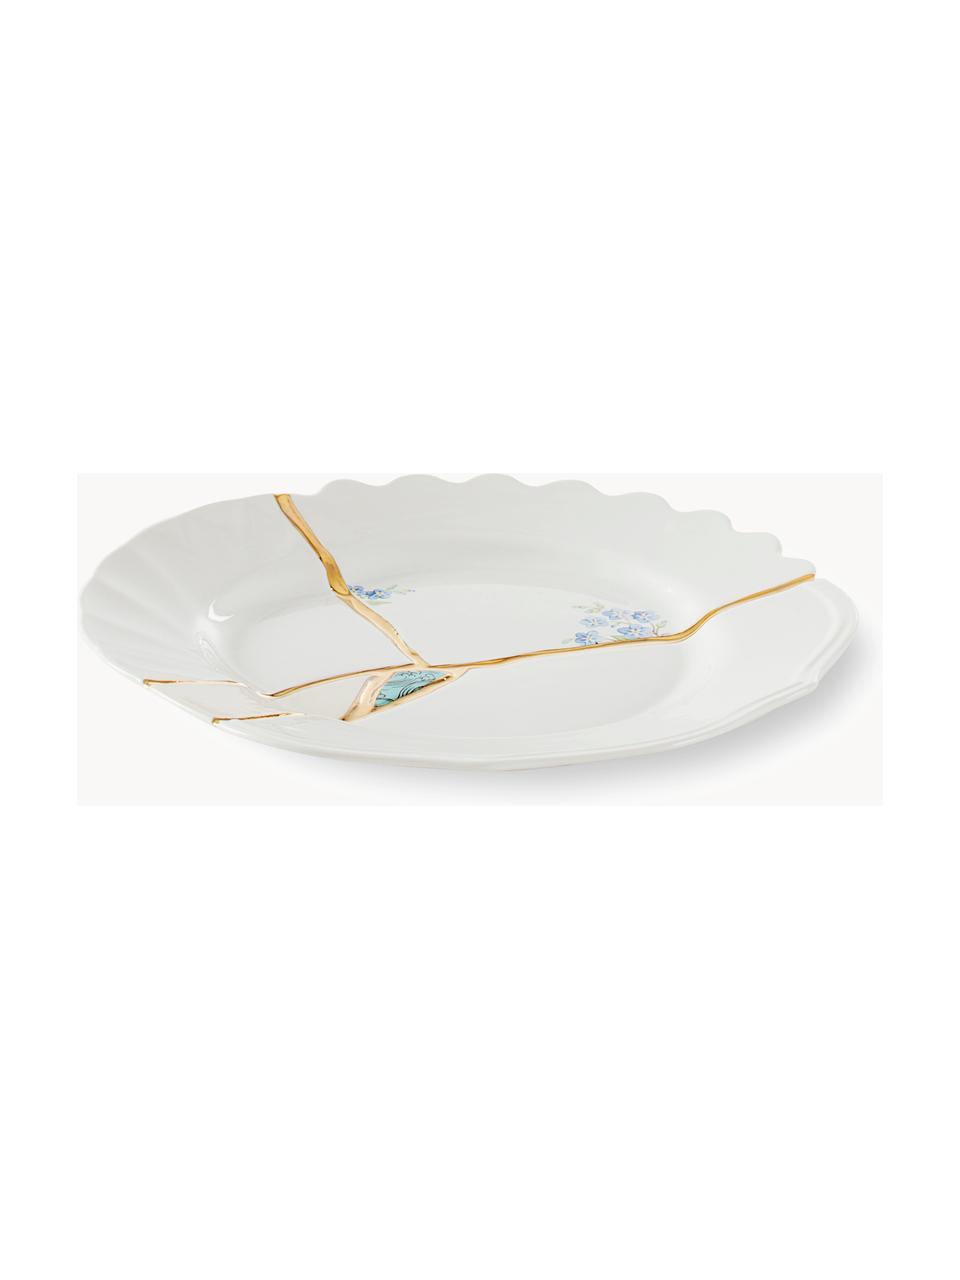 Assiette à dessert en porcelaine design Kintsugi, Blanc, doré, Ø 21 cm